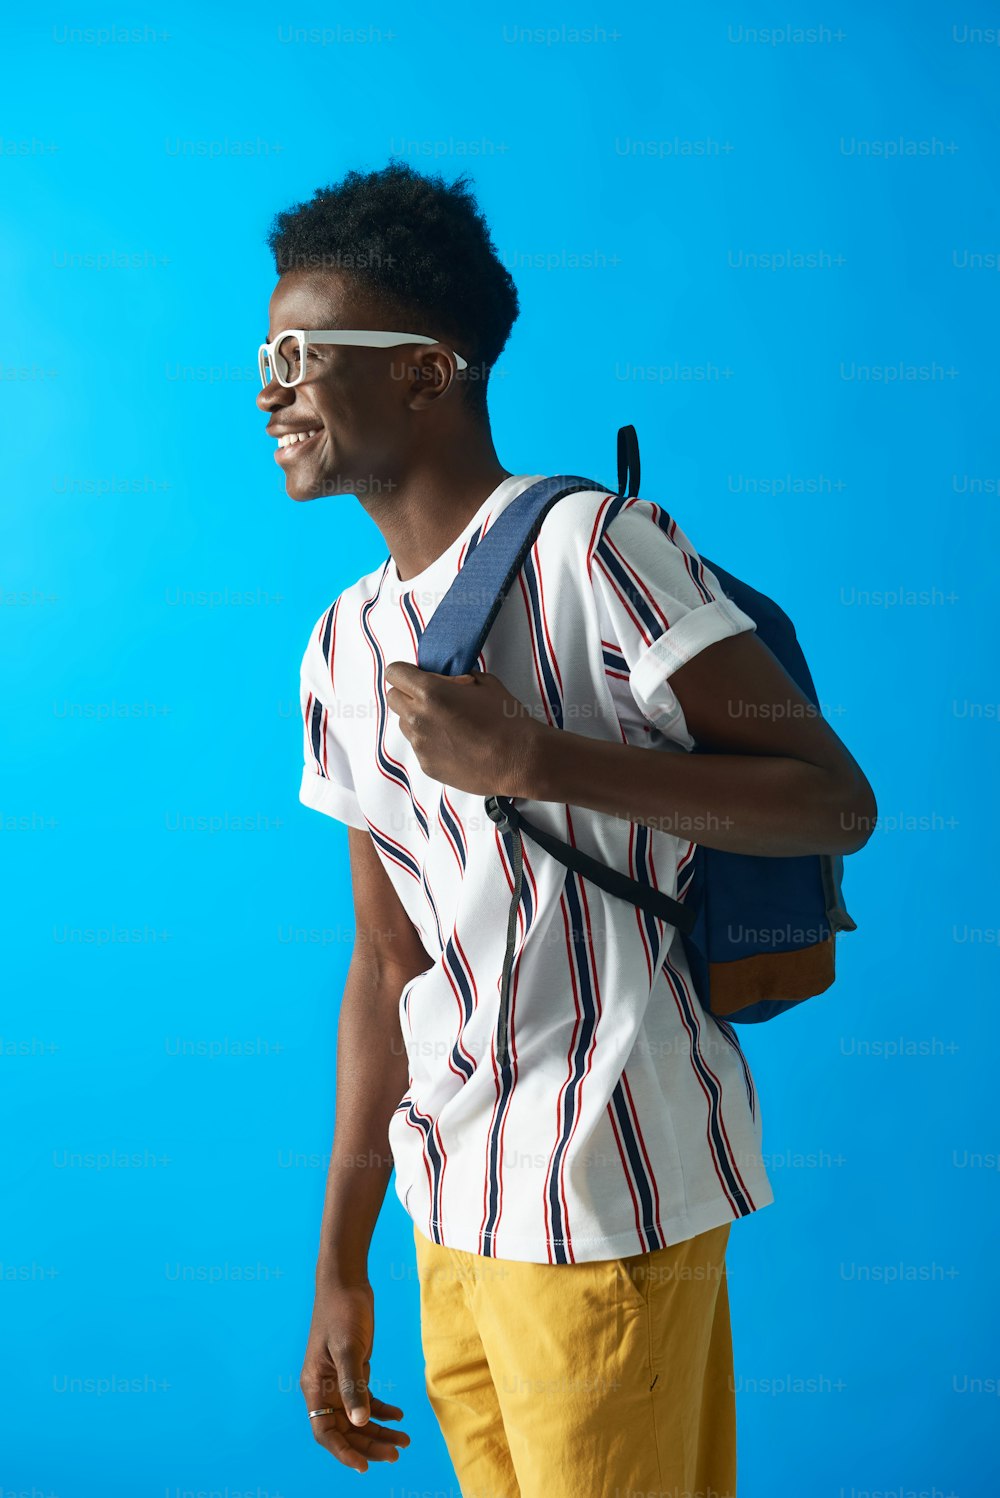 Vista do perfil do jovem estudante da Aframerican usando óculos brancos e camiseta listrada. Ele sorrindo enquanto estava de pé no fundo azul